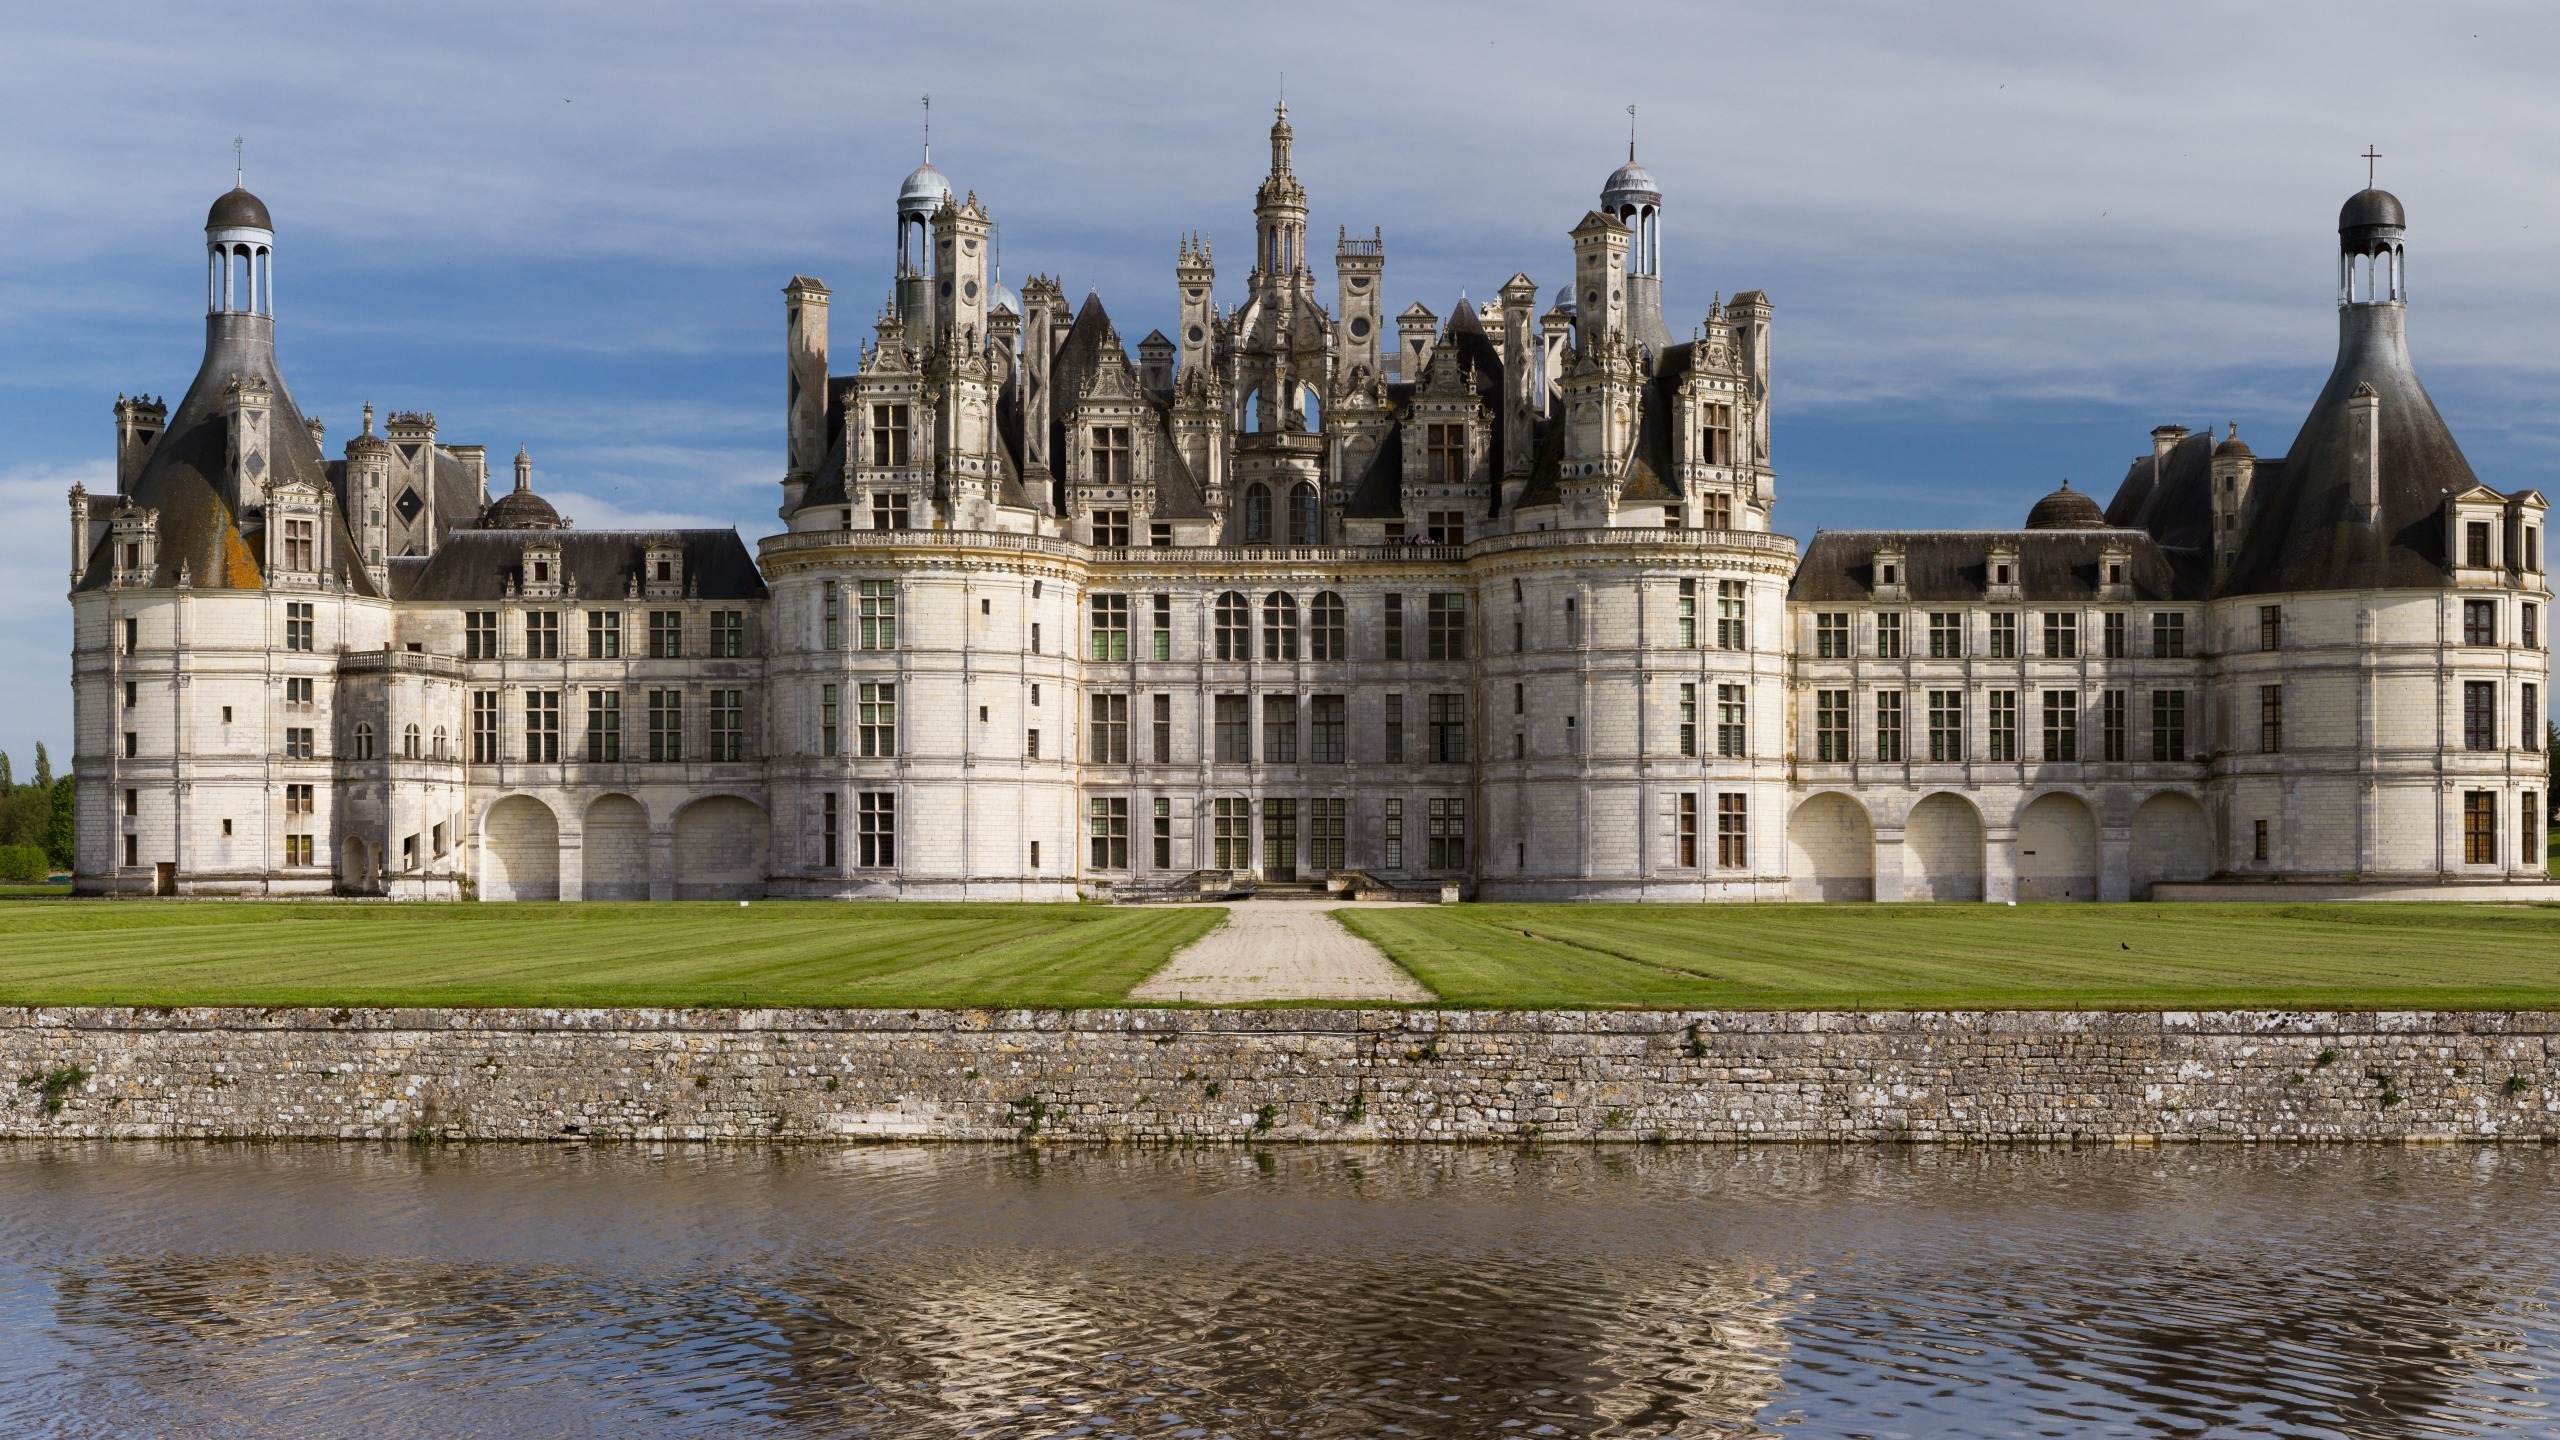 Loire Castles France for 2560x1440 HDTV resolution